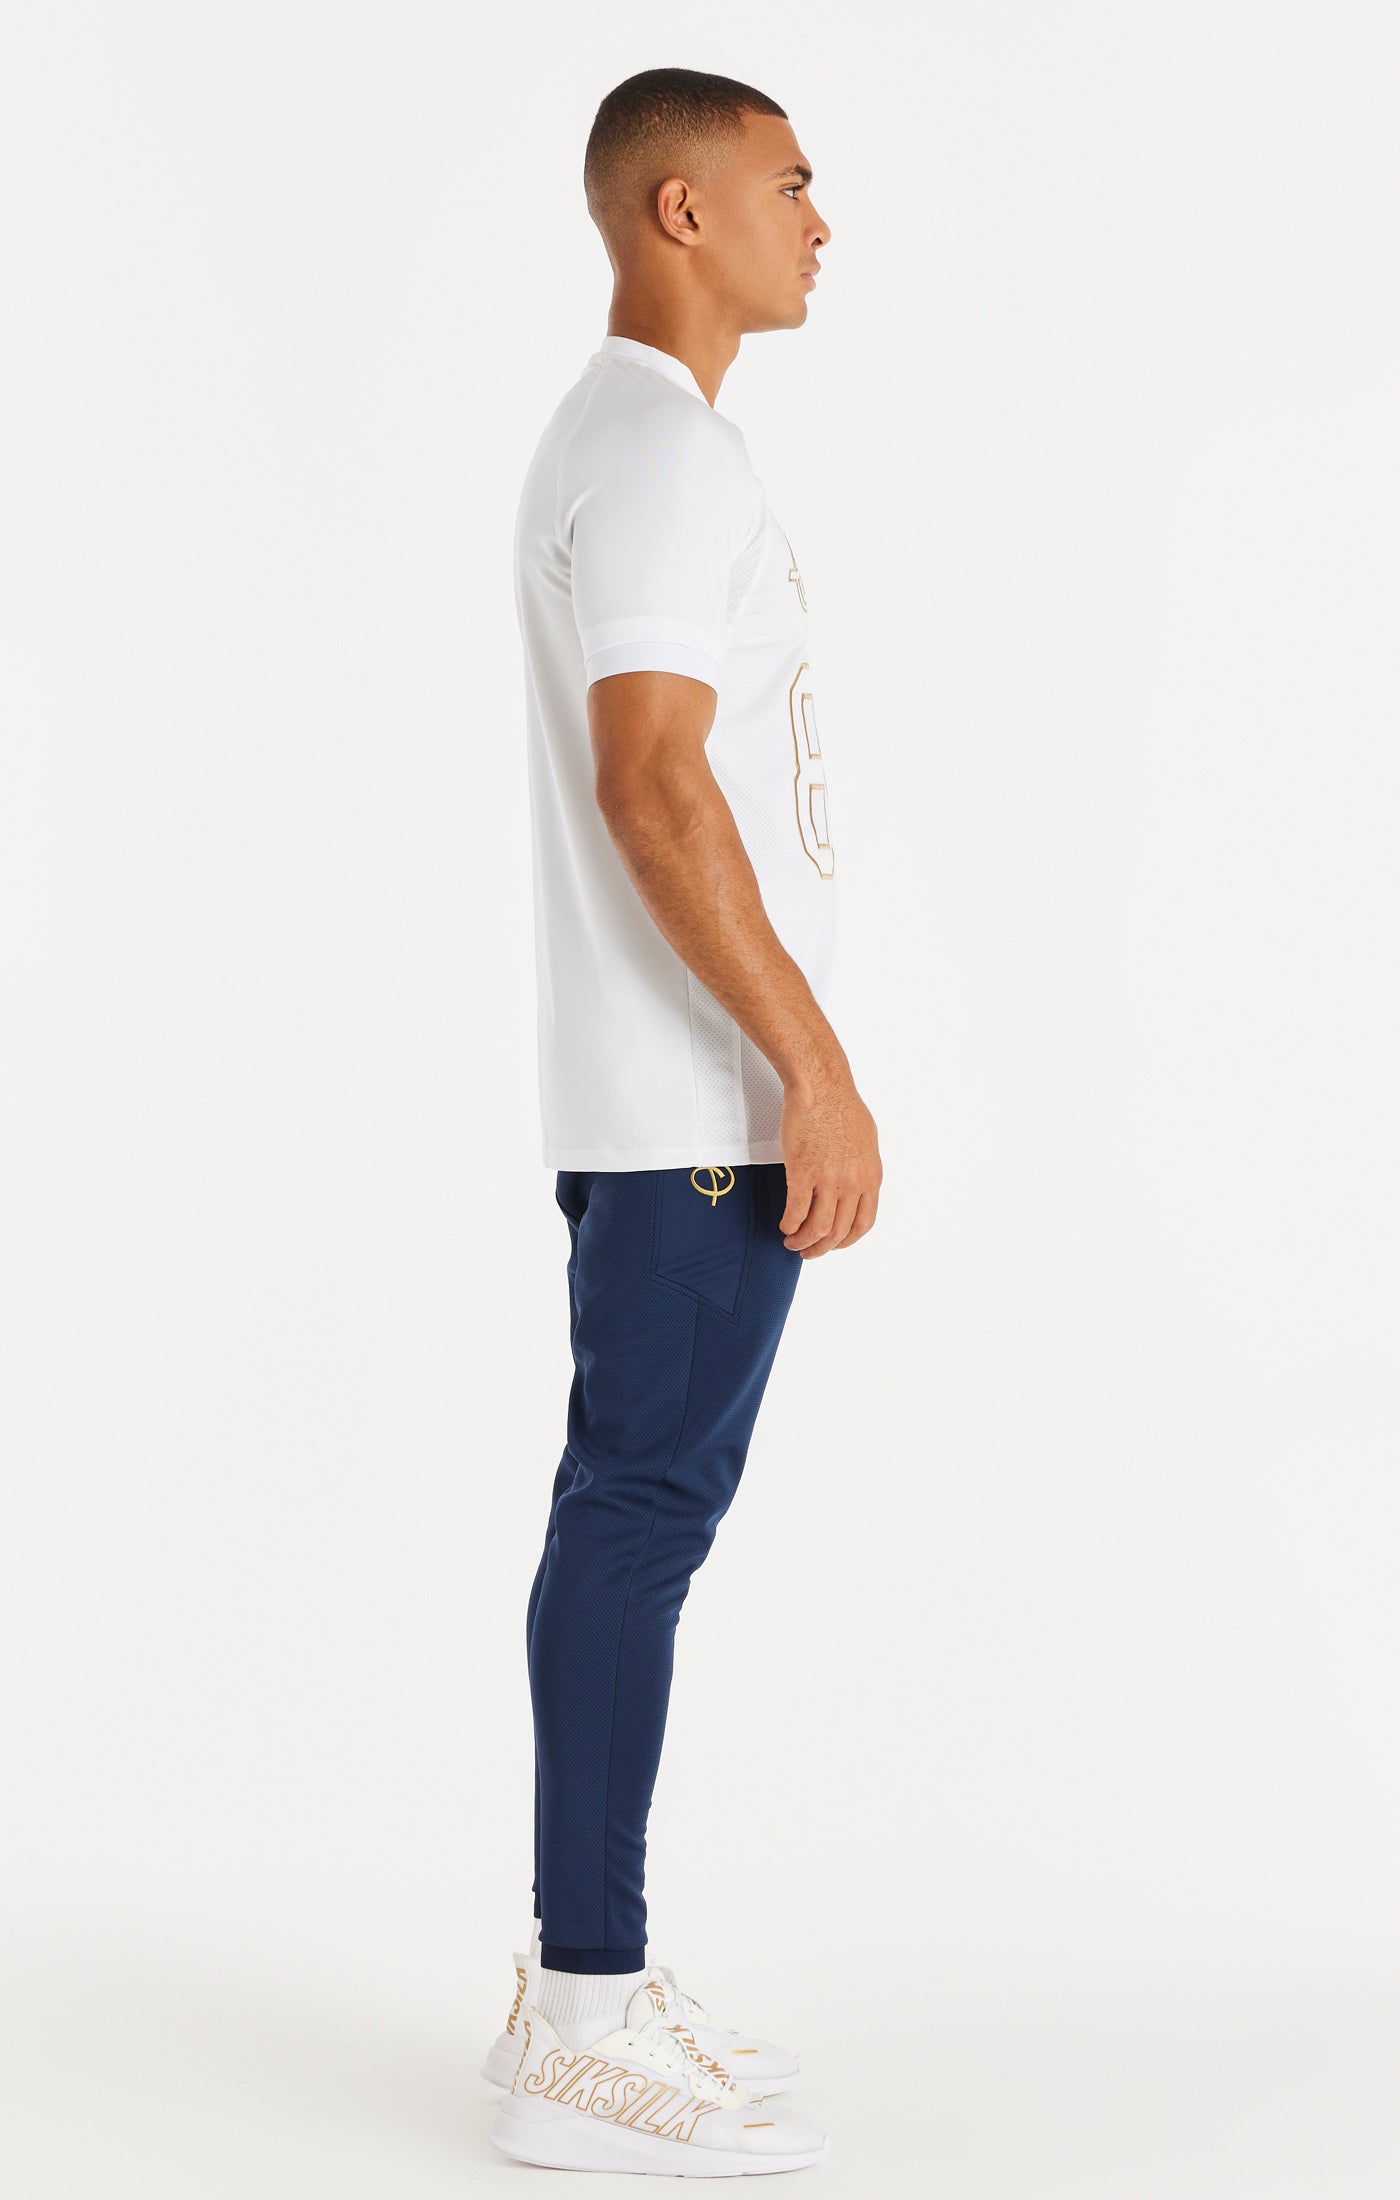 SikSilk Retro Sport-Funktions-T-Shirt mit kurzen Ärmeln – Weiß (3)